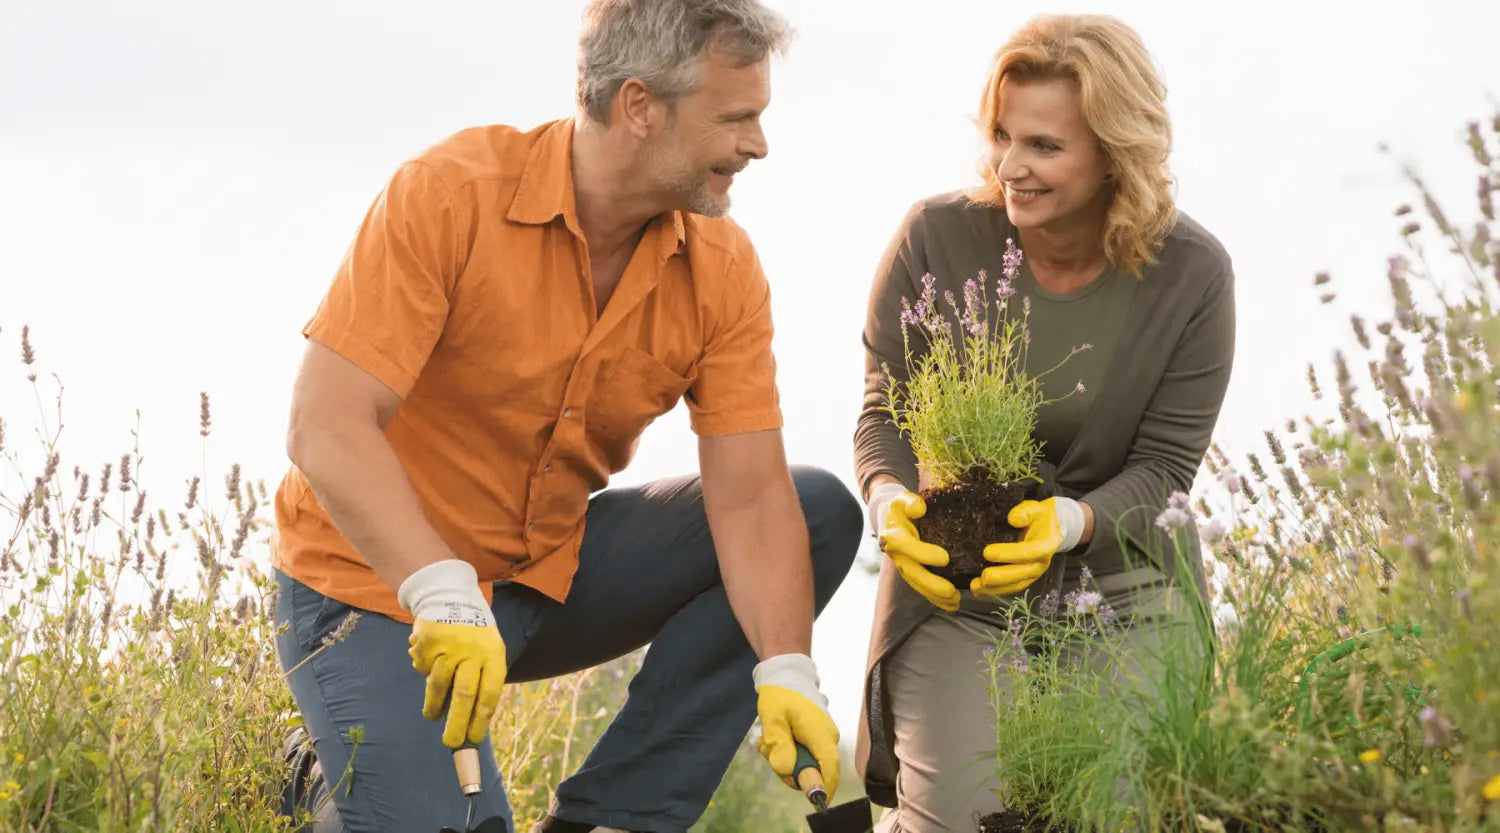 Ein Mann in einem orangefarbenen Hemd und gelben Gartenhandschuhen hält zwei Gartengeräte, während er neben seiner Frau kniet, die eine Pflanze einsetzt. Beide Partner schauen sich auf einem Feld liebevoll und verbunden an